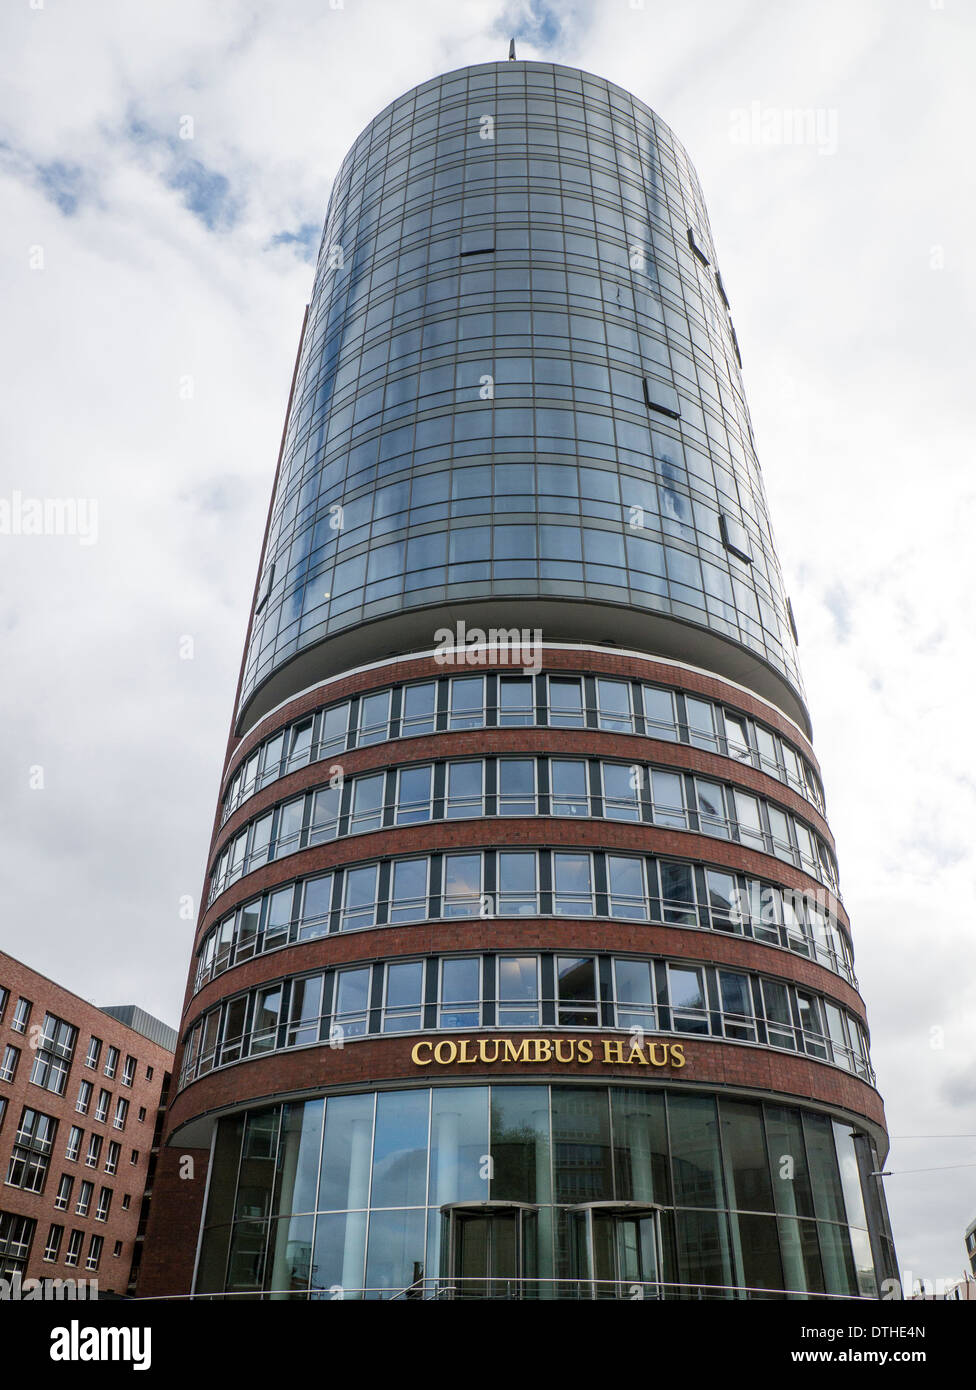 Hotel Columbus dans le nouveau Hafencity à Hambourg, Allemagne. Banque D'Images